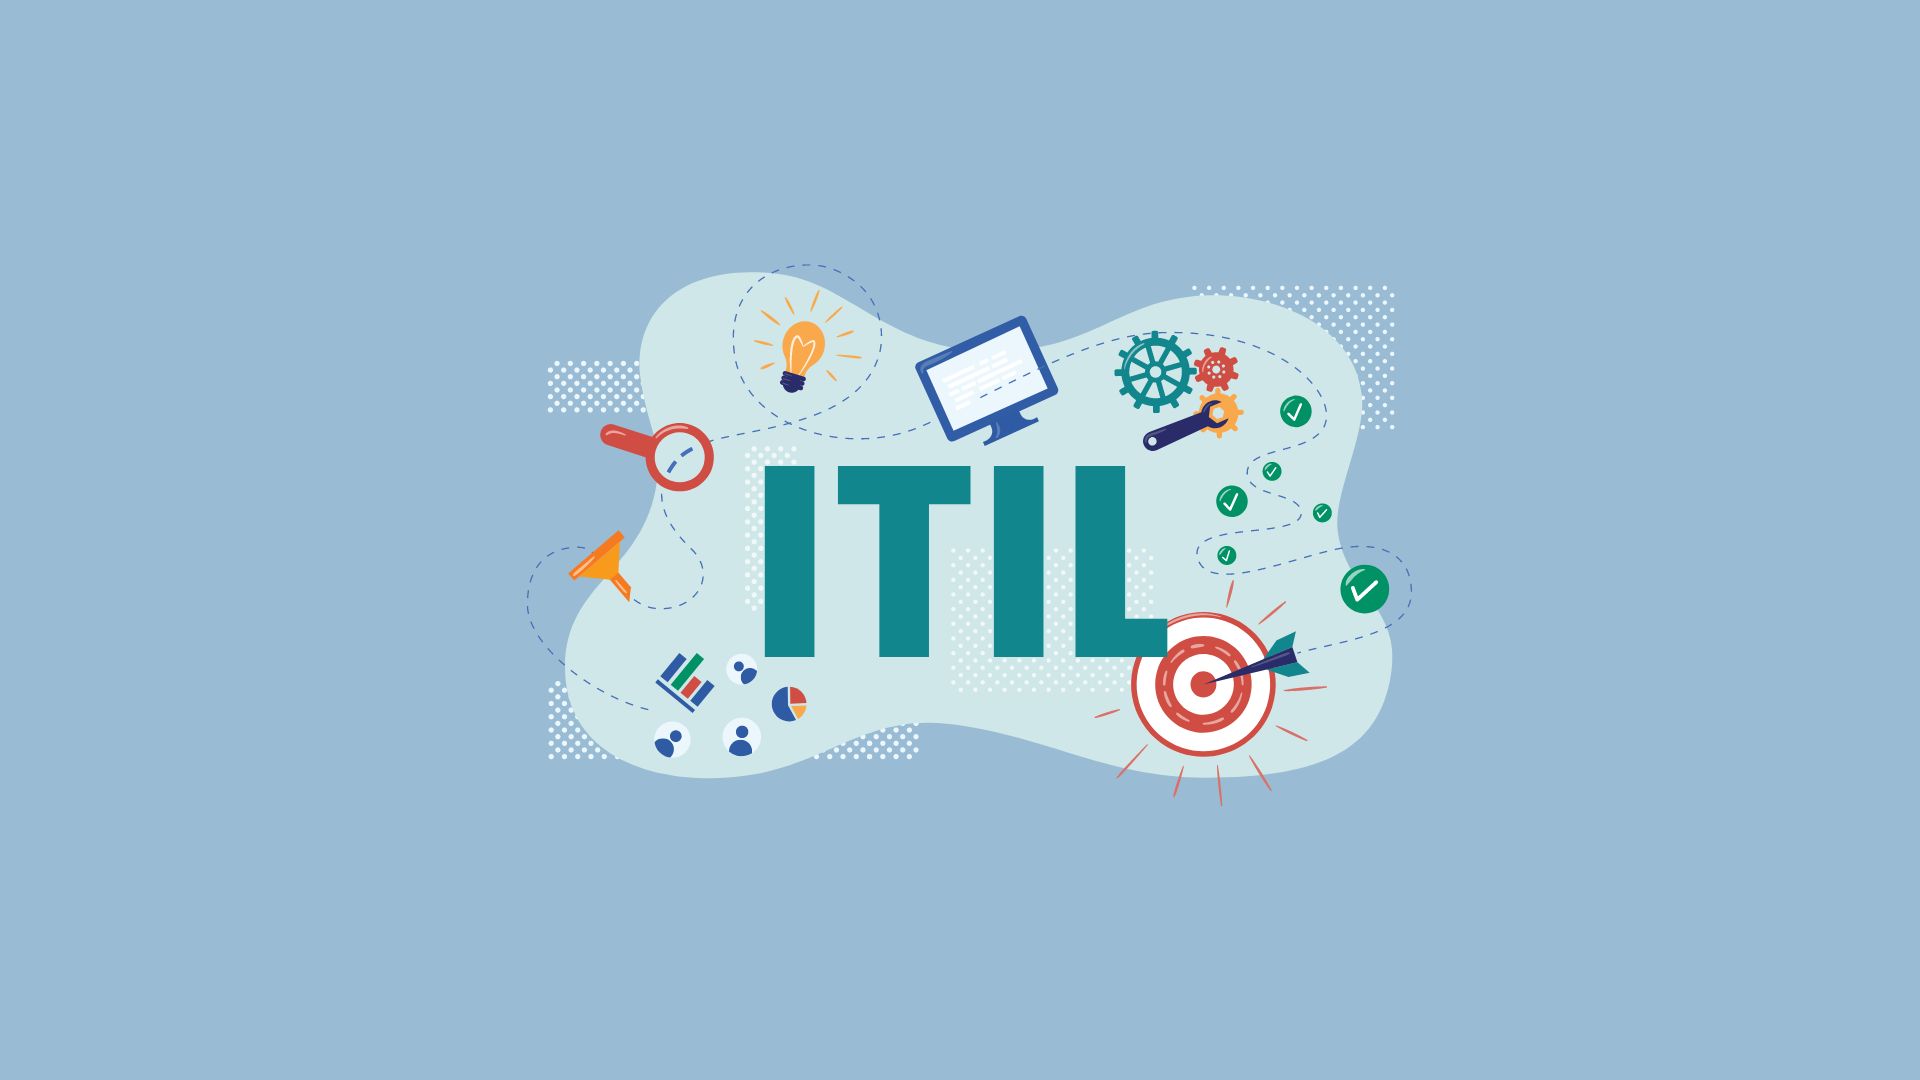 ITIL signifie Information Technology Infrastructure Library, c'est une méthode de gestion des services informatiques développée à l'origine par l'Office gouvernemental britannique des échanges et des technologies de l'information (OGC)